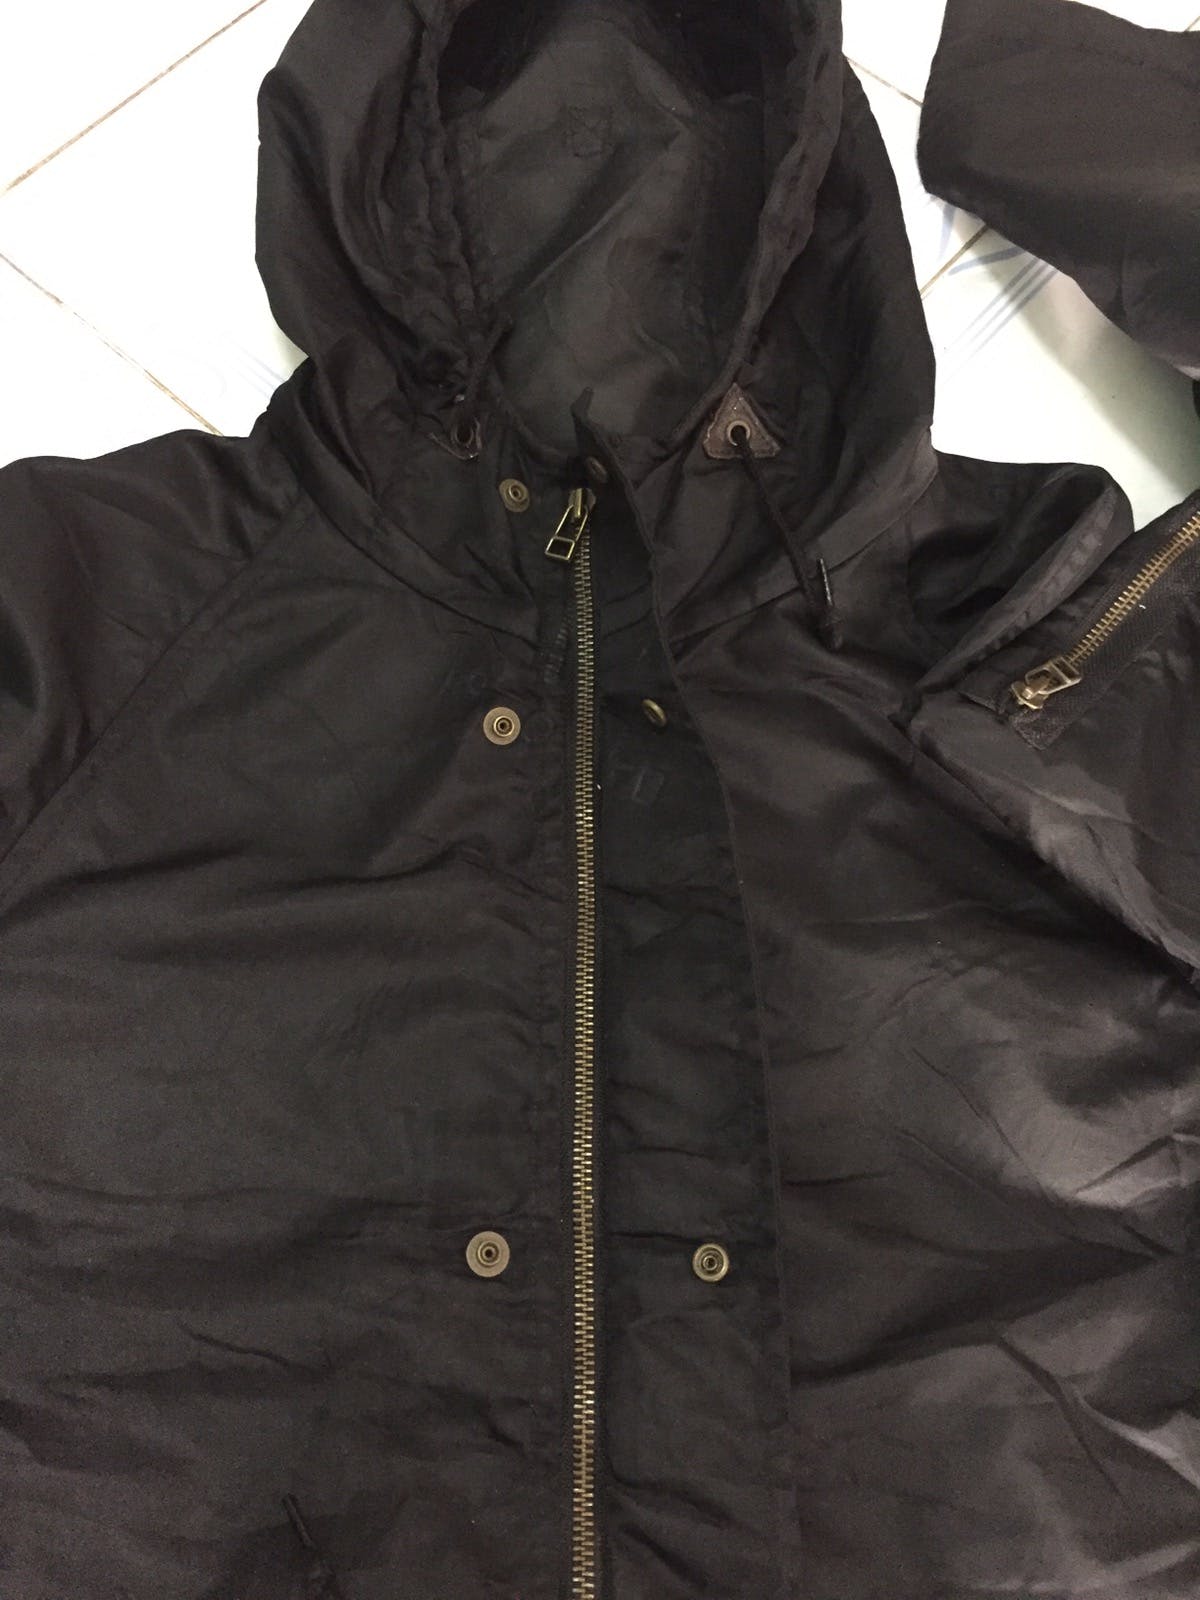 Nylon Schott combat type jacket cap hoodie - 15